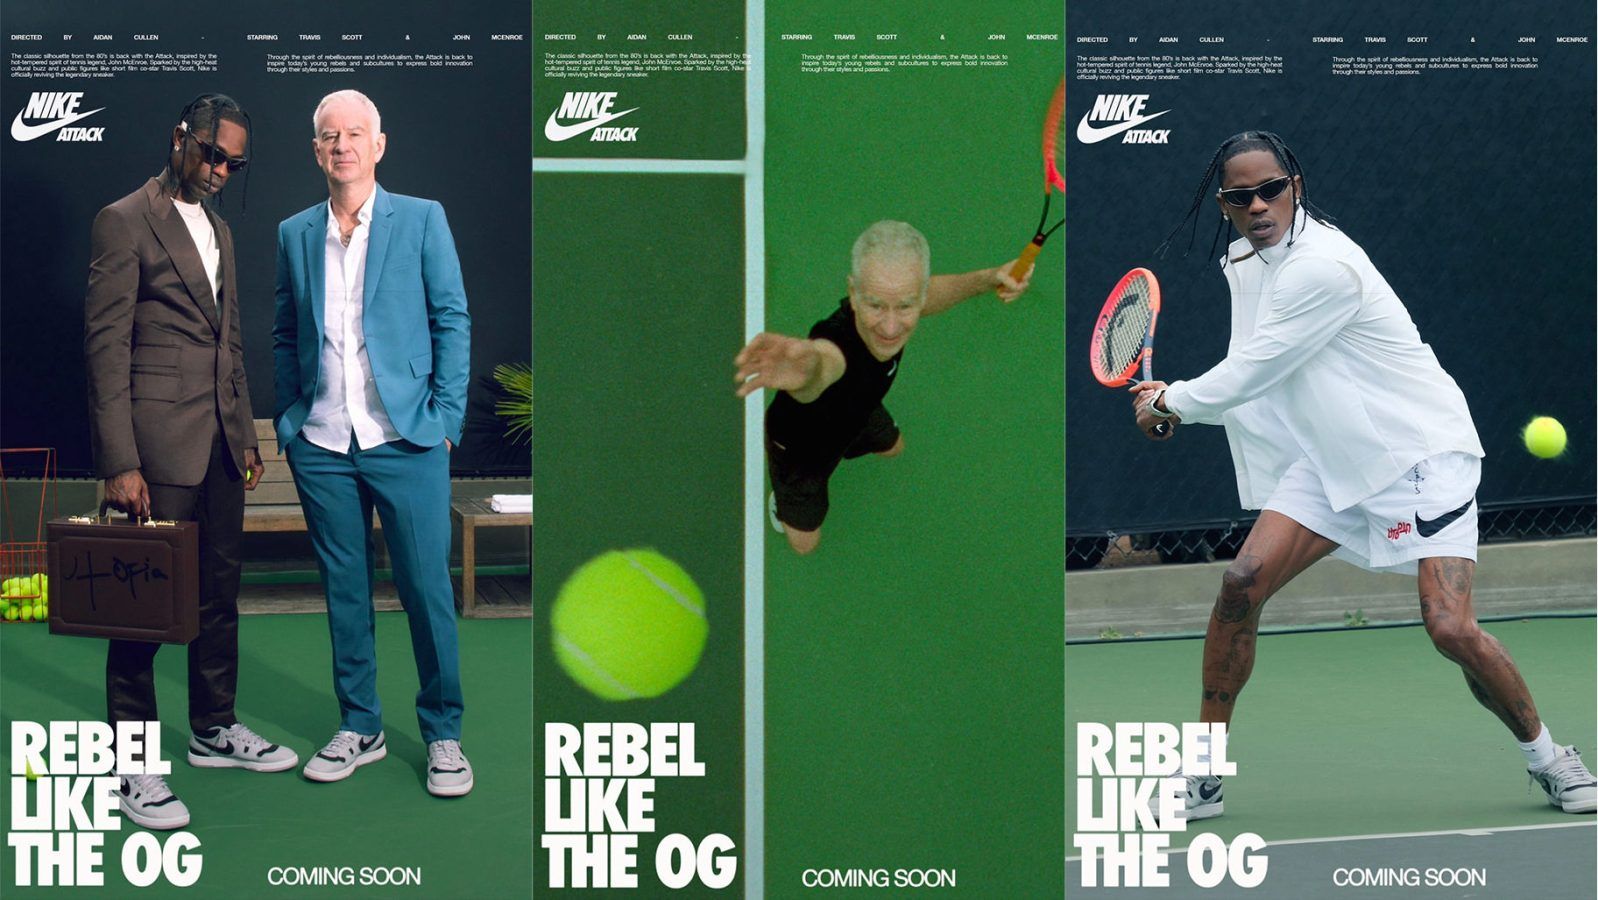 El uno al otro Misterioso En respuesta a la Travis Scott and tennis legend John McEnroe revive Nike's Mac Attacks